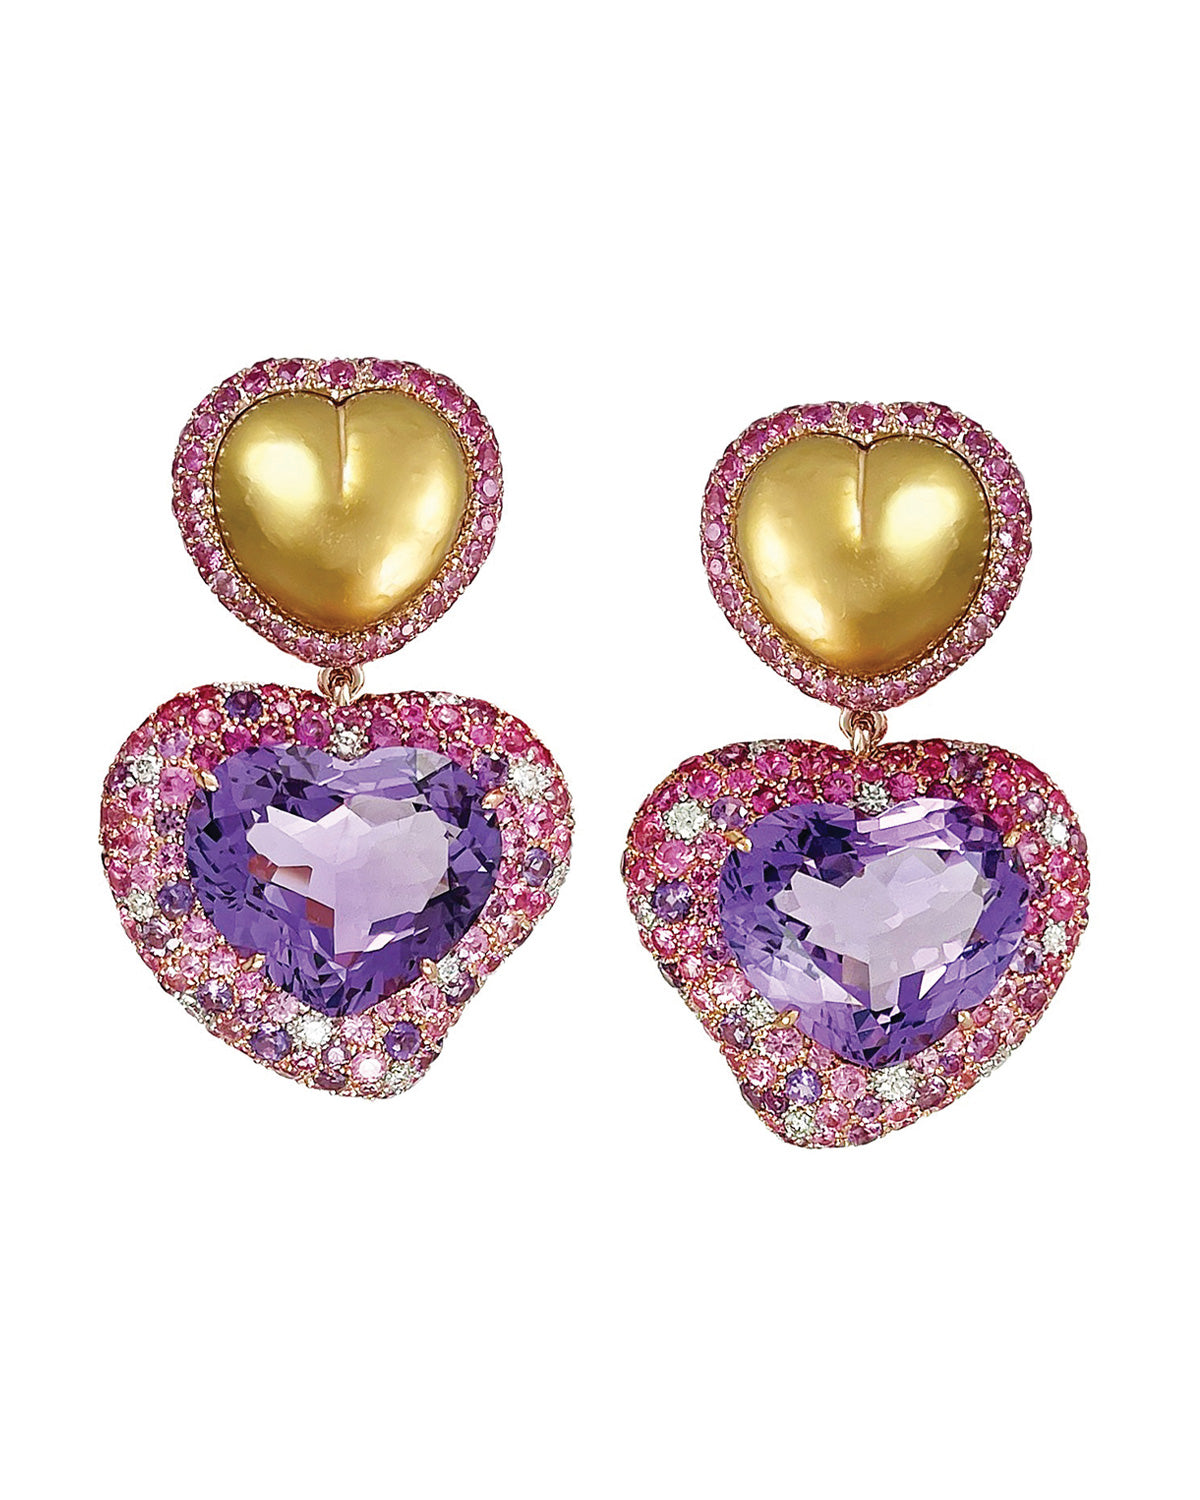 Golden Pearl & Amethyst Heart Earrings